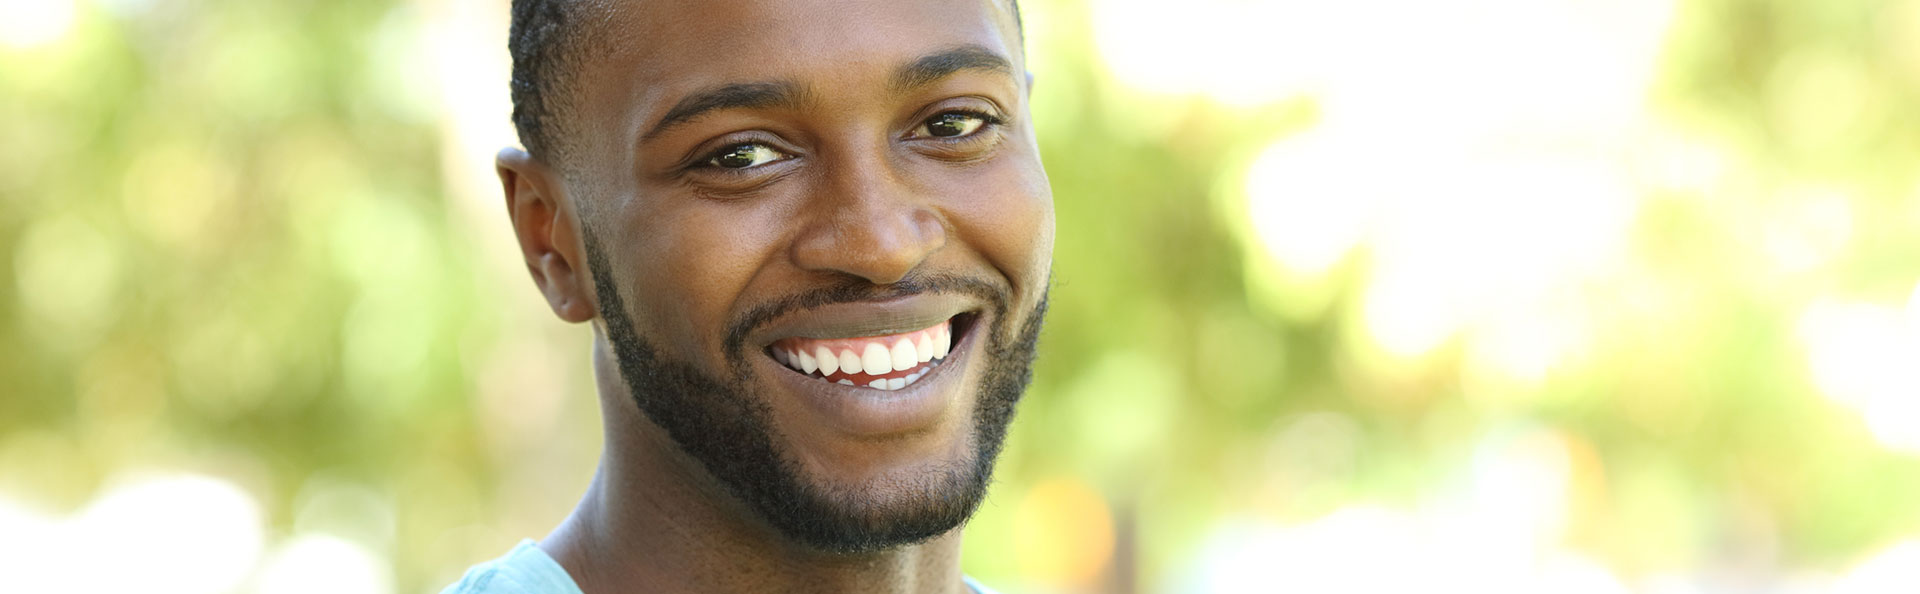 Man smiling after comprehensive oral exam